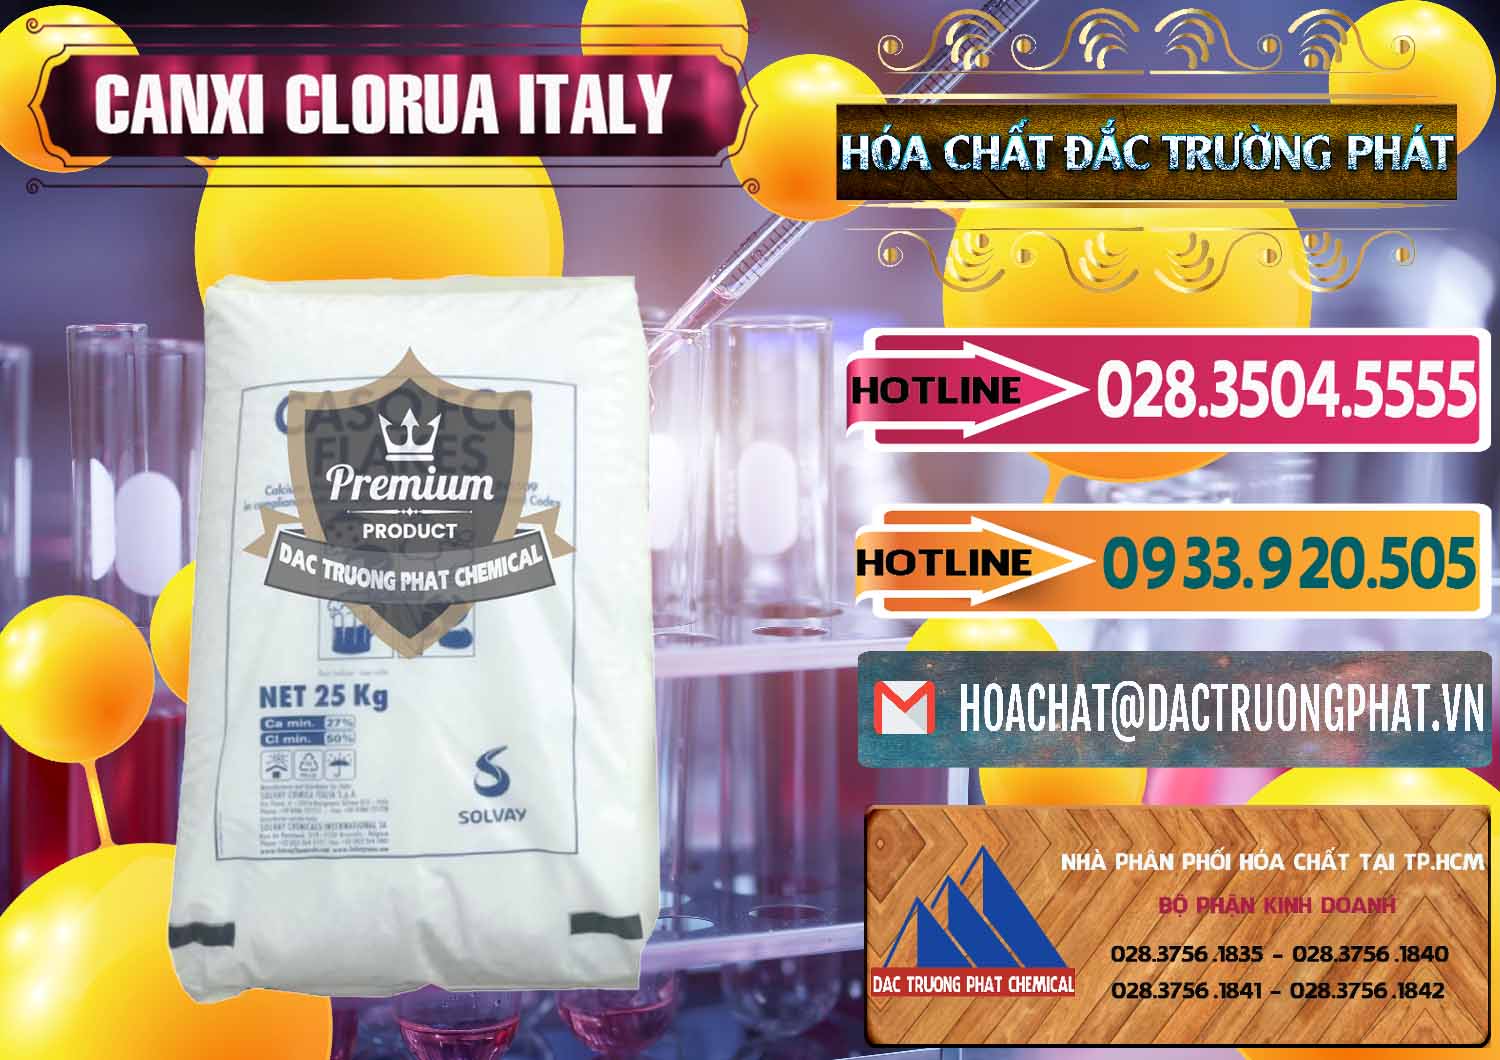 Nơi chuyên bán - cung cấp CaCl2 – Canxi Clorua Food Grade Ý Italy - 0435 - Công ty kinh doanh và phân phối hóa chất tại TP.HCM - dactruongphat.vn